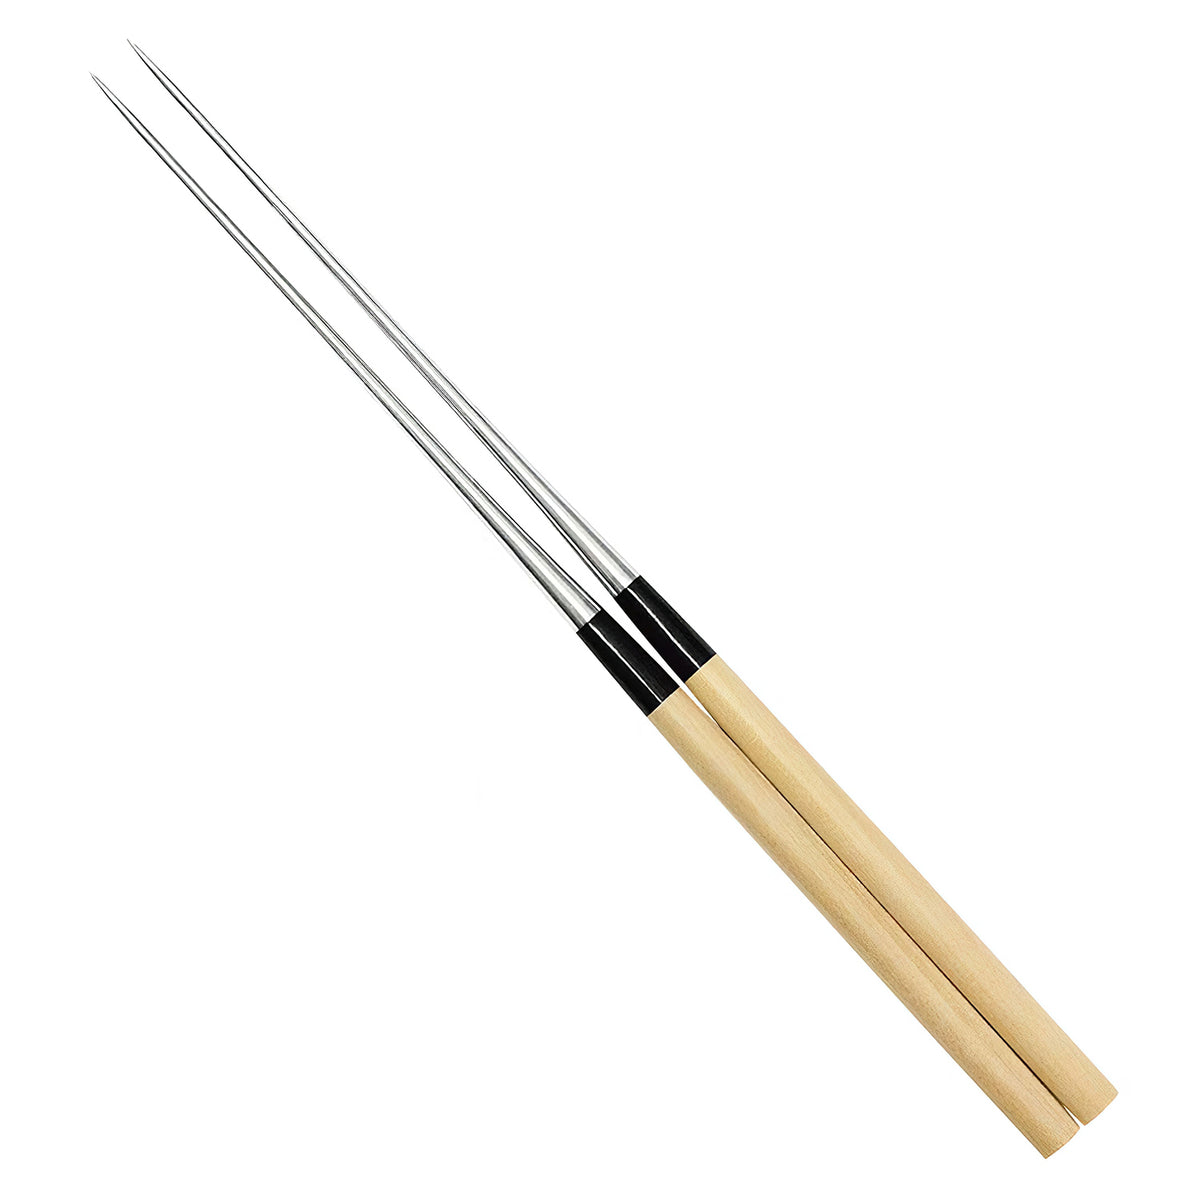 Kanaguchi Stainless Steel Serving Chopsticks